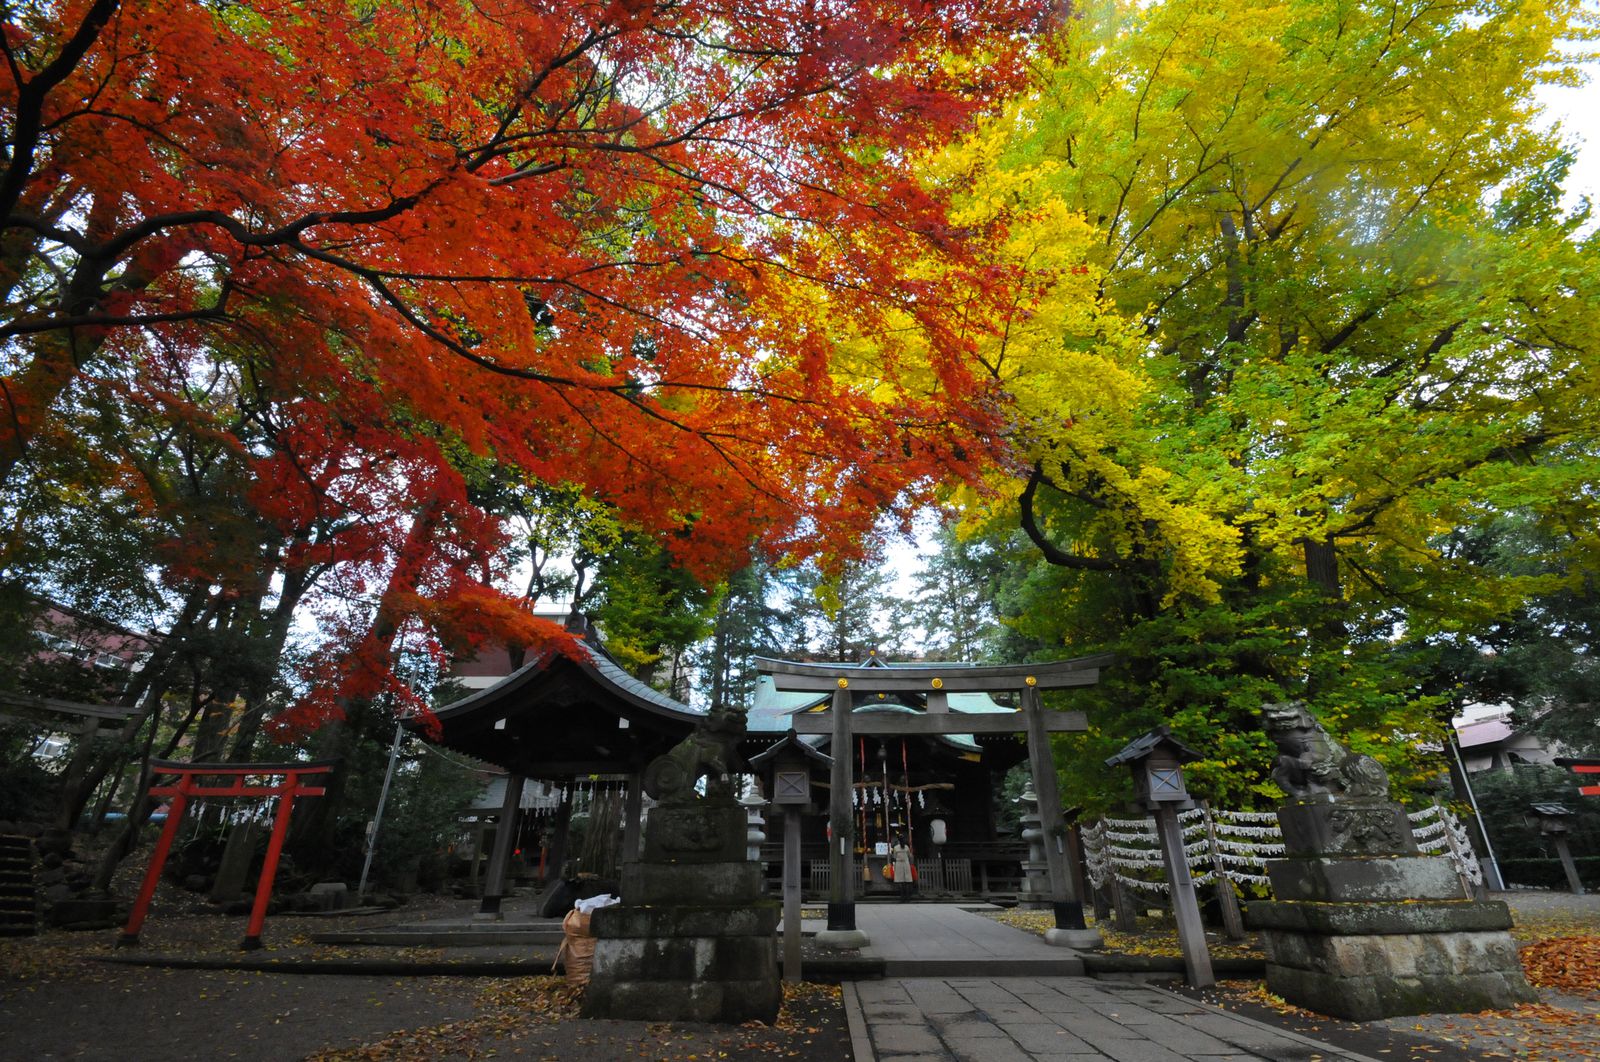 メイン画像 年間400万人が訪れる 香川県 金刀比羅宮の紅葉が素敵だと話題 Retrip リトリップ